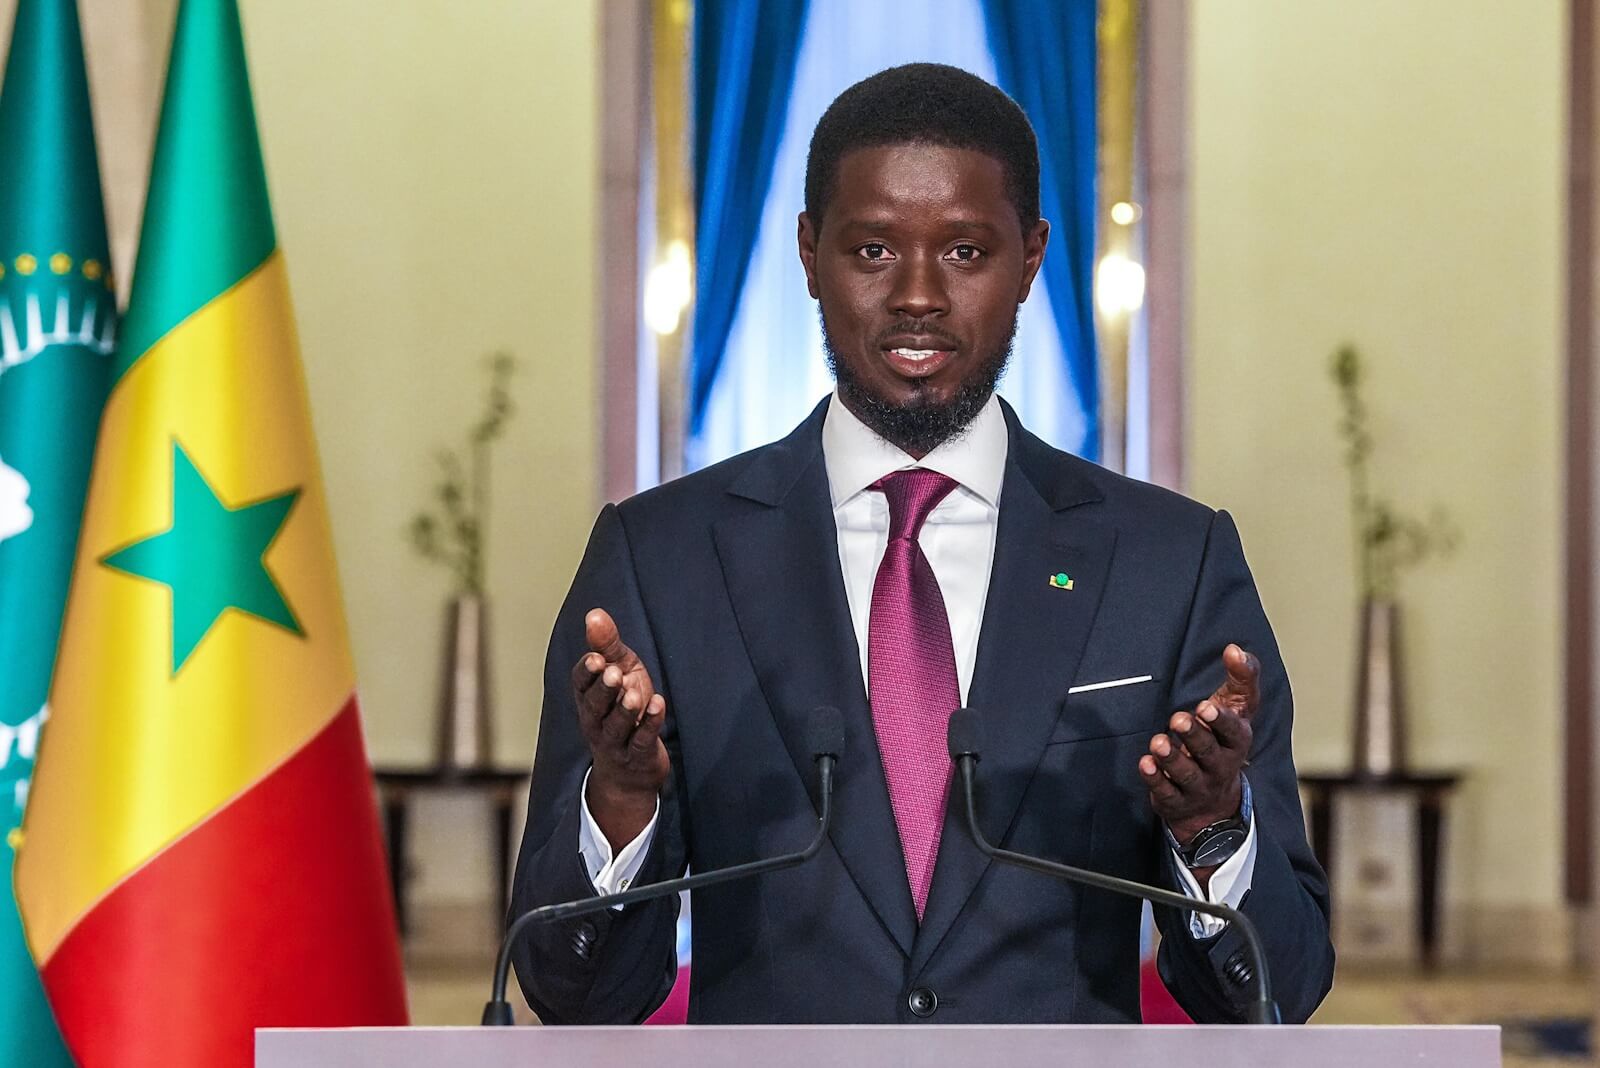 Vente aux enchères: l'Etat du Sénégal négocie l'acquisition des ouvrages de la bibliothèque de son ancien président Senghor